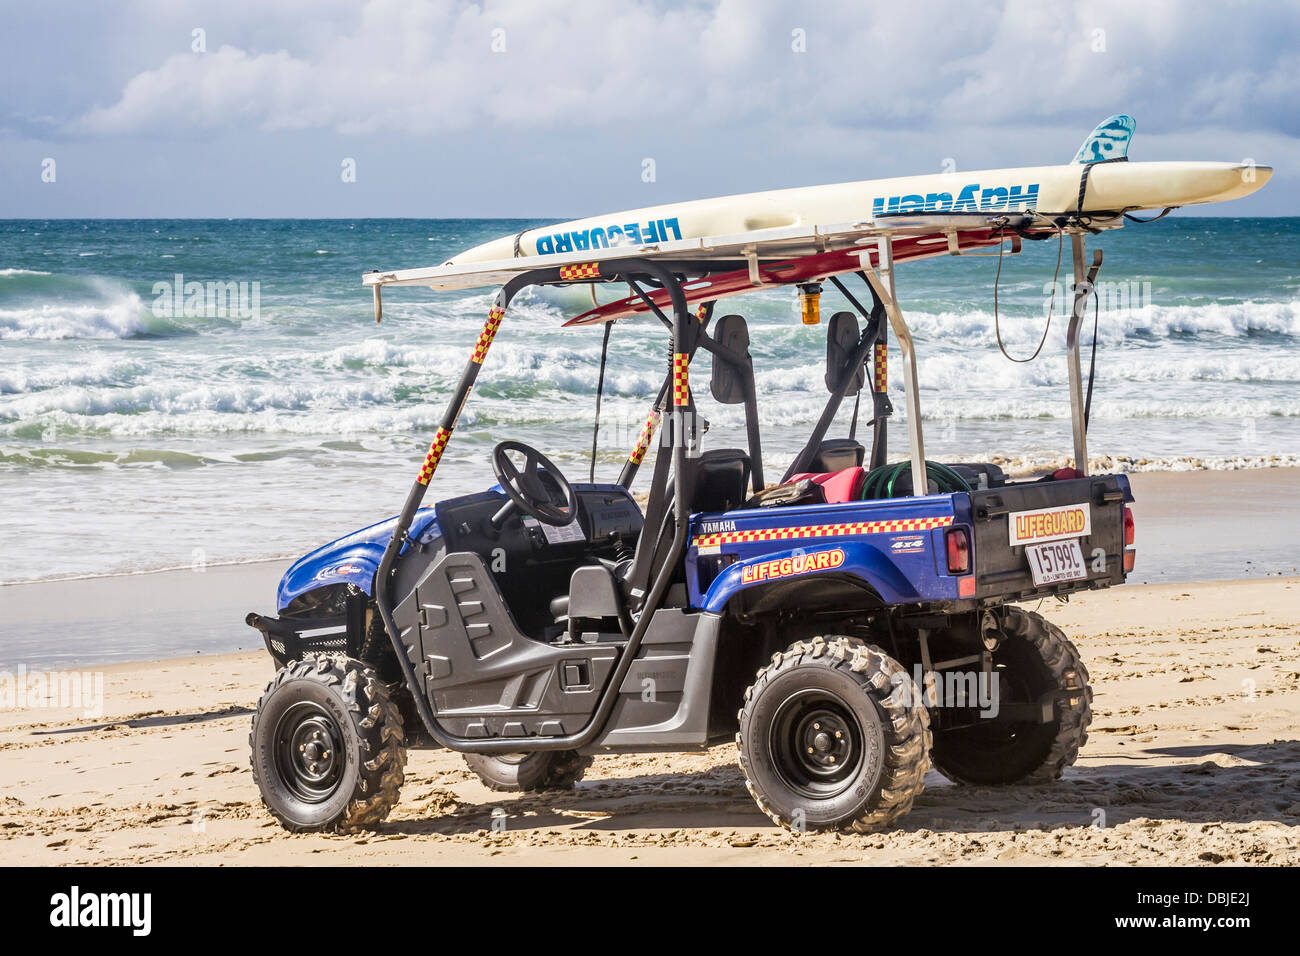 Surf life guard véhicule à Mudjimba Beach sur la Sunshine Coast, Queensland, Australie Banque D'Images